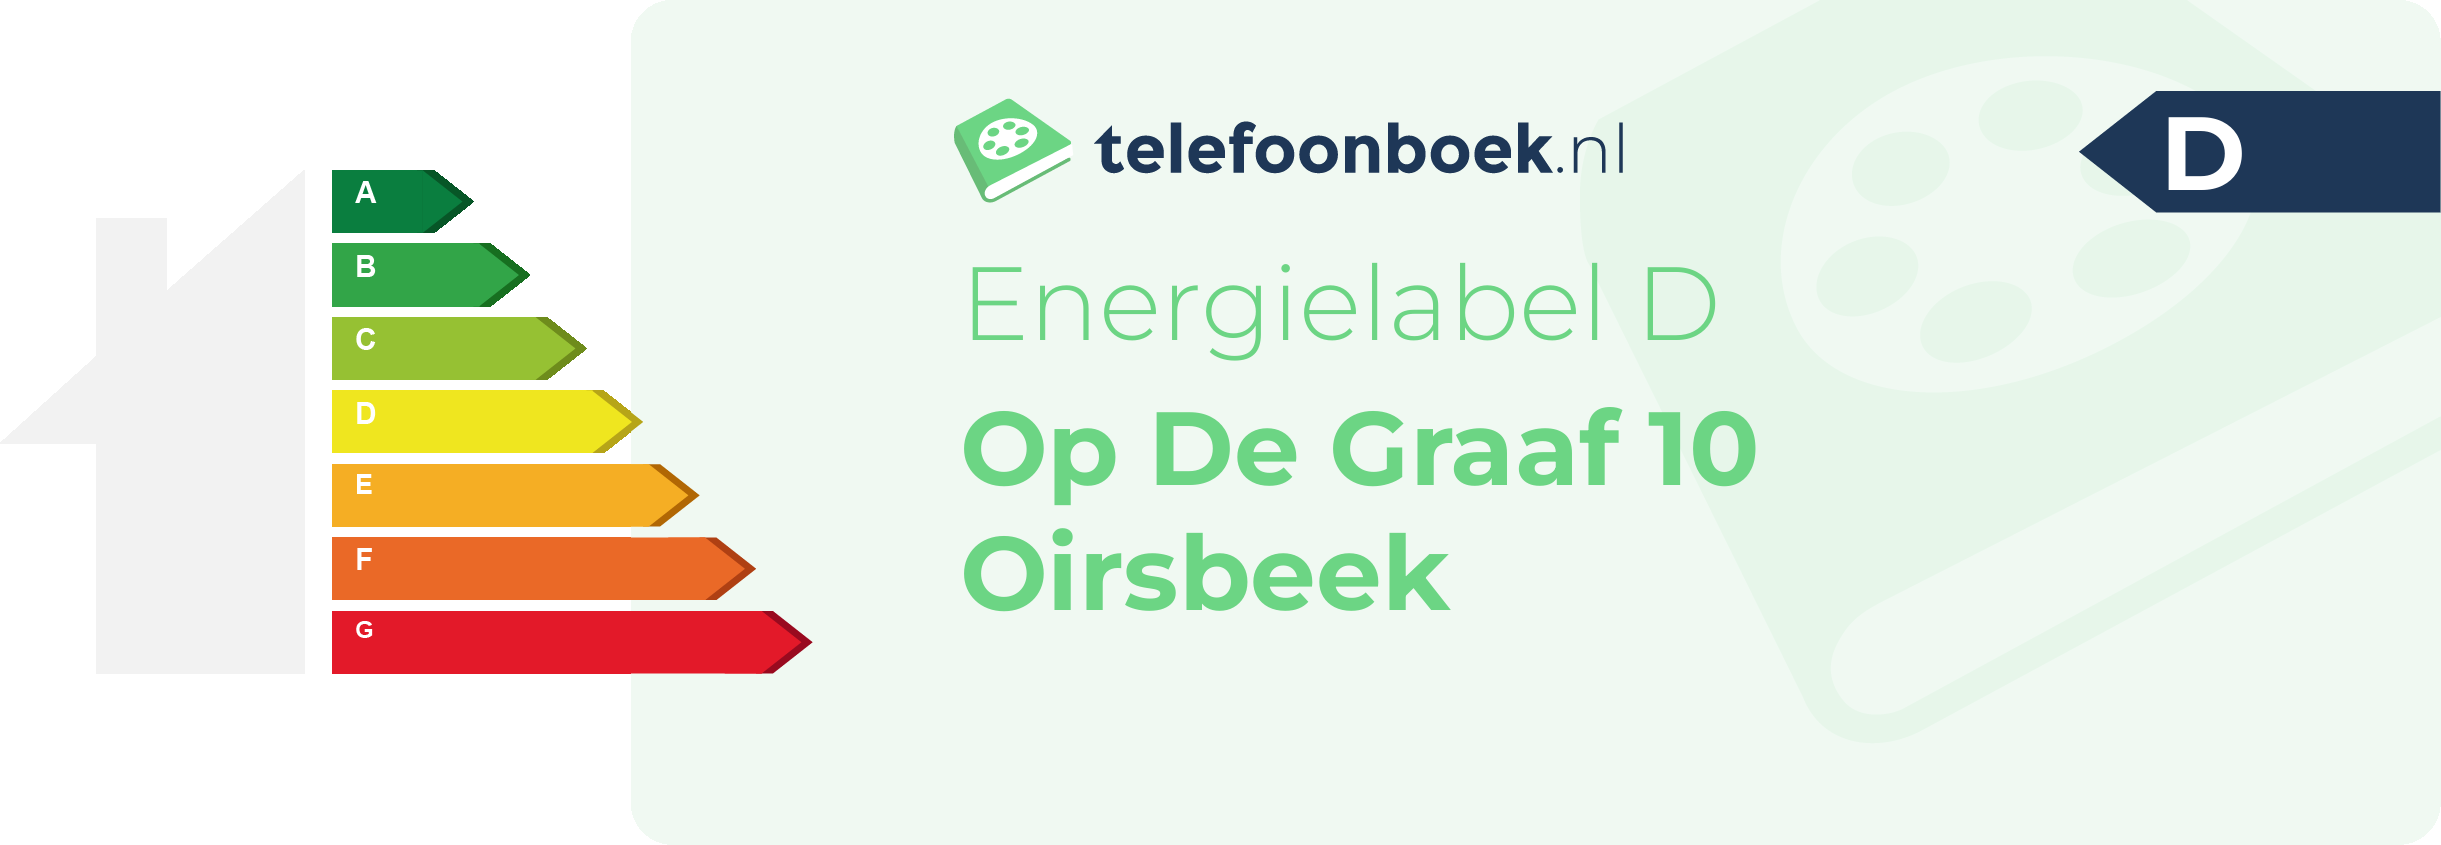 Energielabel Op De Graaf 10 Oirsbeek